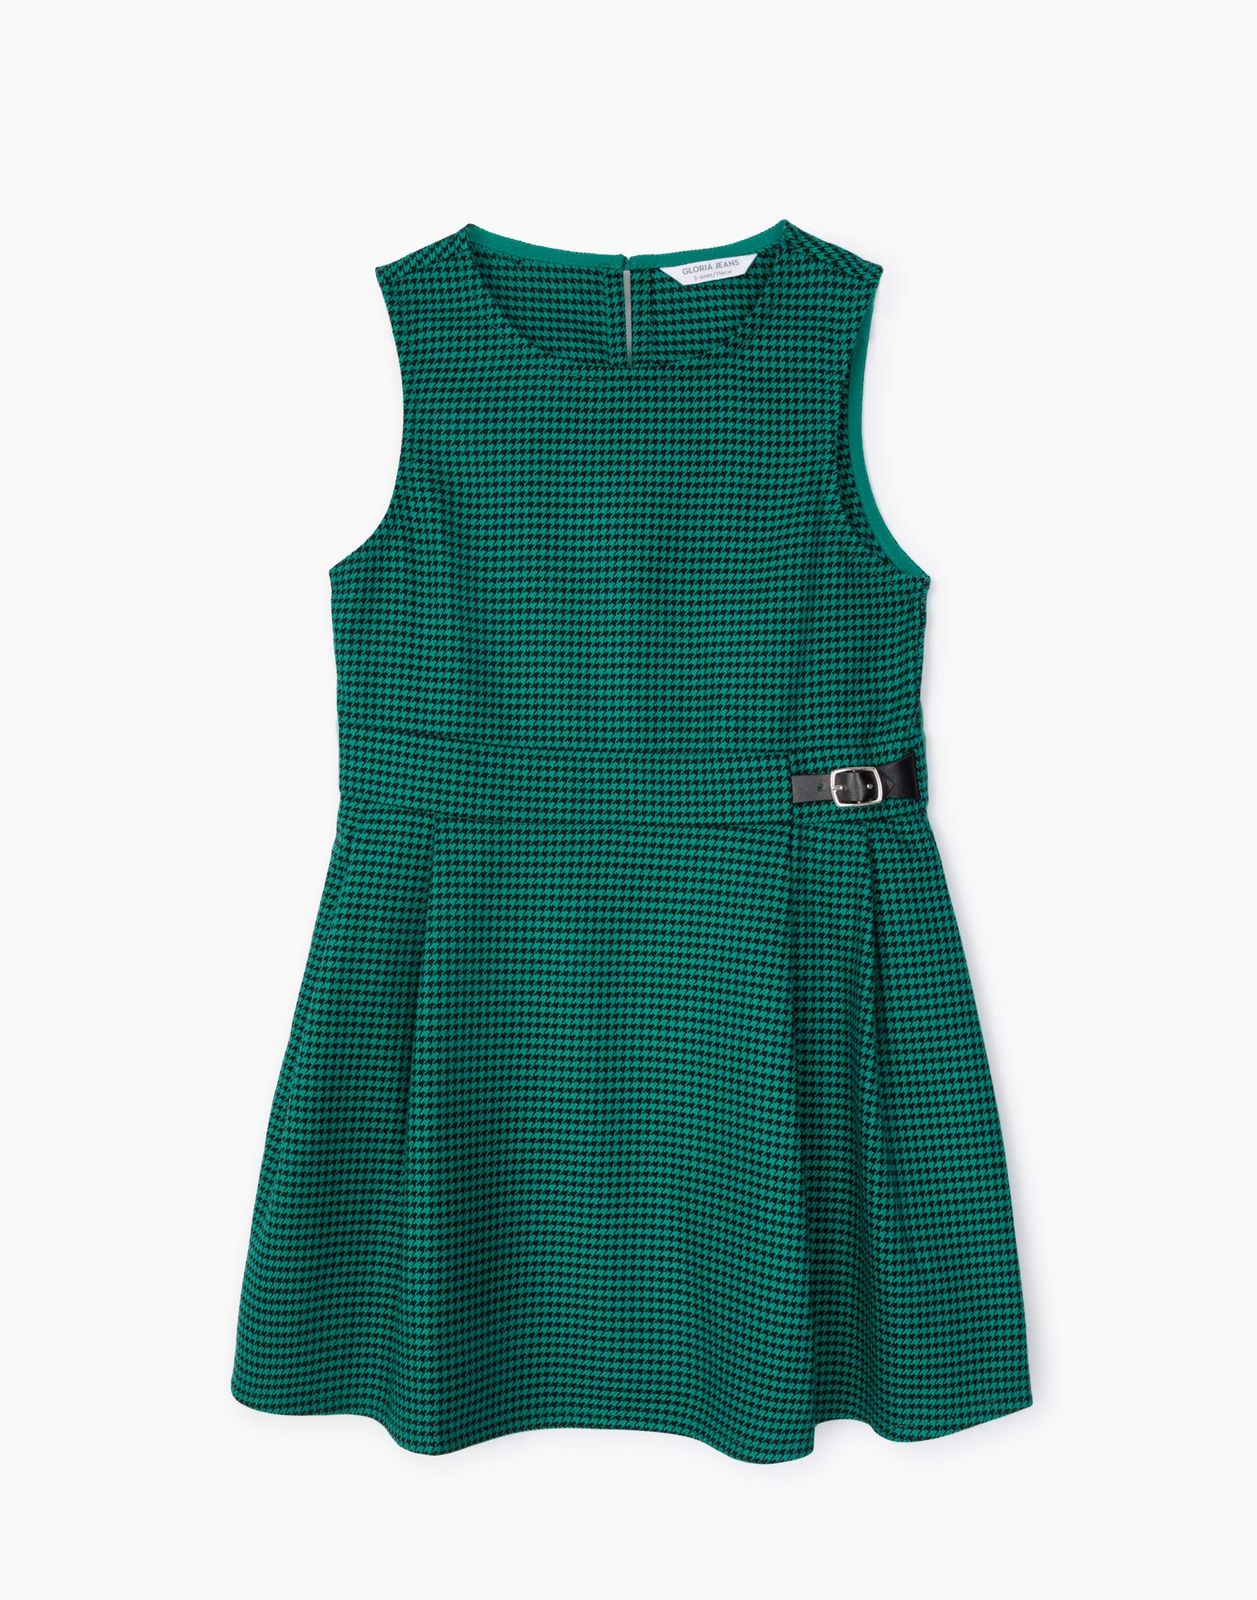 Платье детское Gloria Jeans GDR027840, зеленый/черный, 104